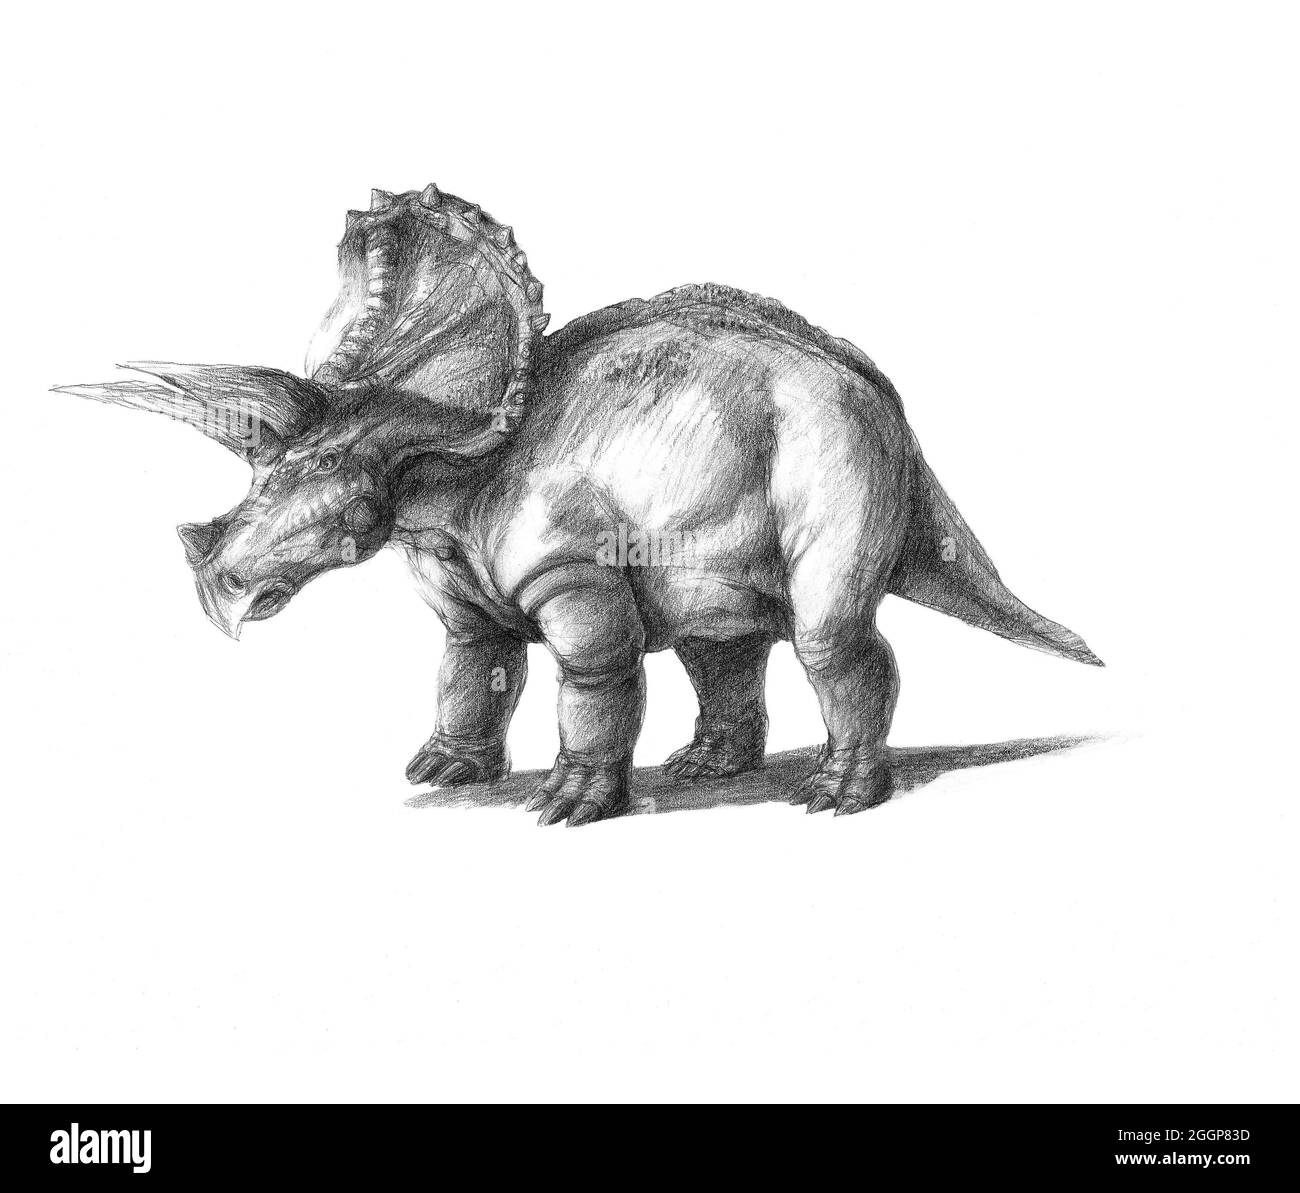 Illustrazione dei Triceratops. Triceratops è un genere di dinosauro erbivoro ceratopsido che visse durante la fase maastrichtiana del tardo periodo cretaceo, in Nord America. Foto Stock